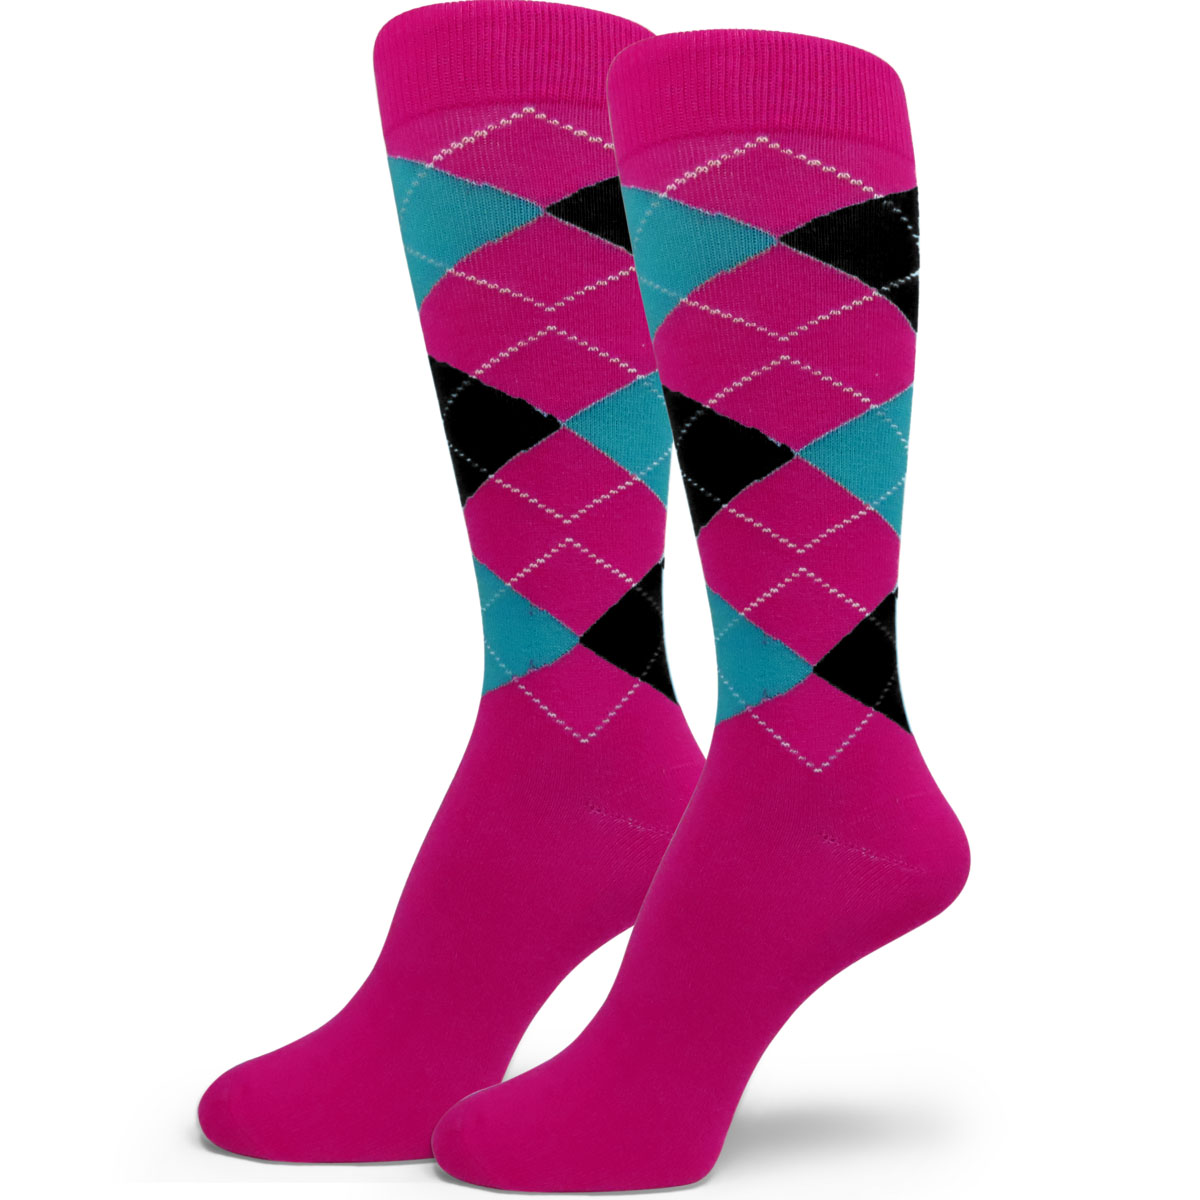 Hot Pink, Black, Sky Blue Argyle Socks for Men & Groomsmen